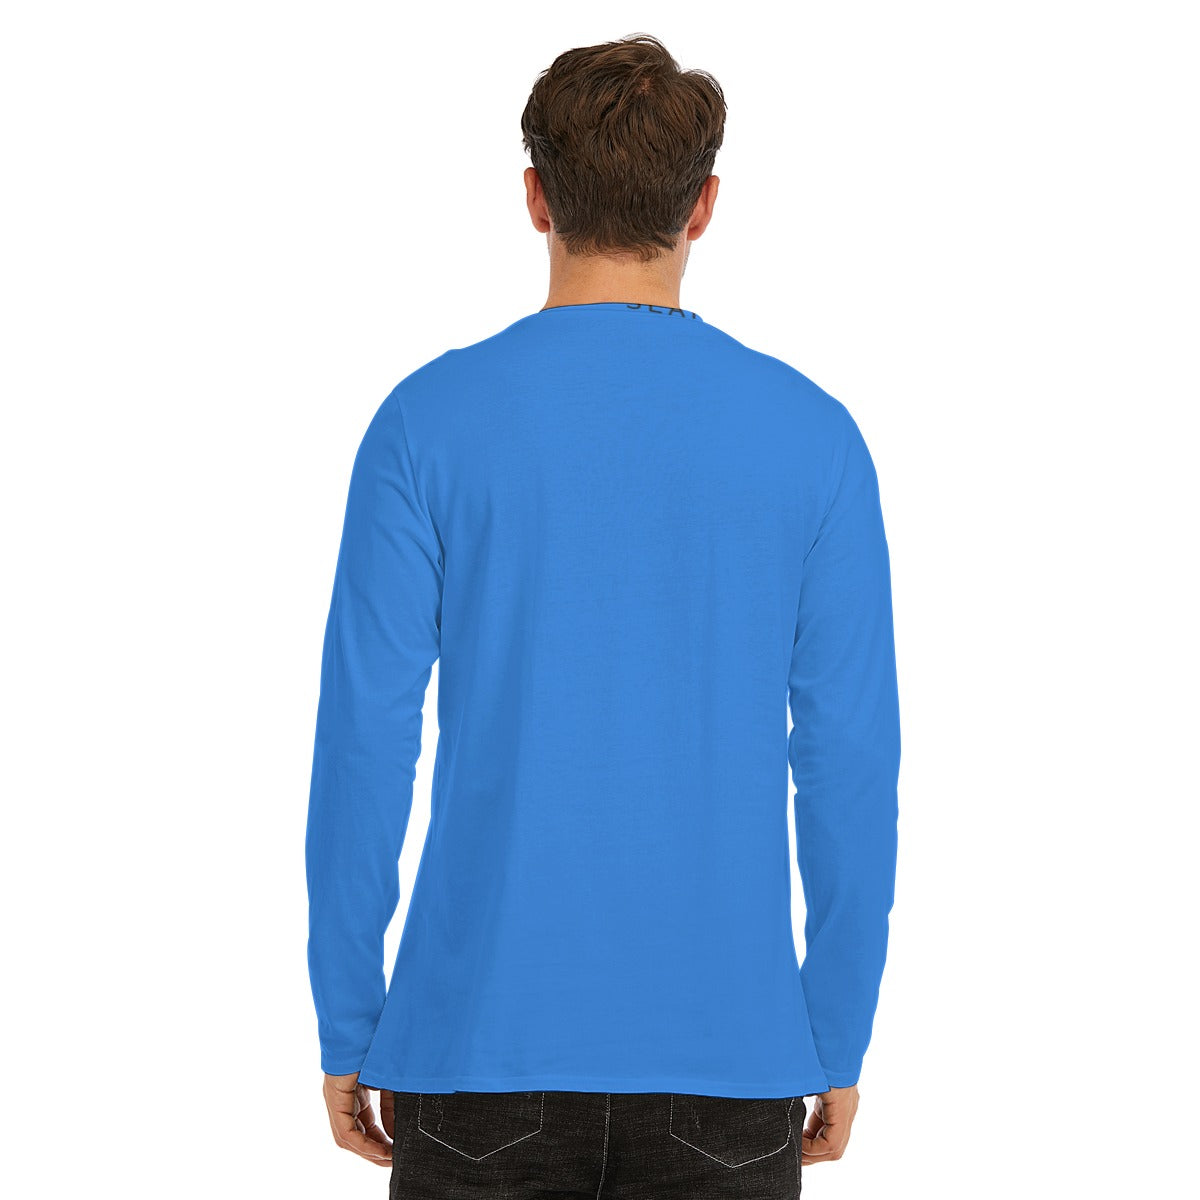 SEANGANJE Long Sleeve T-Shirt | 190GSM Cotton